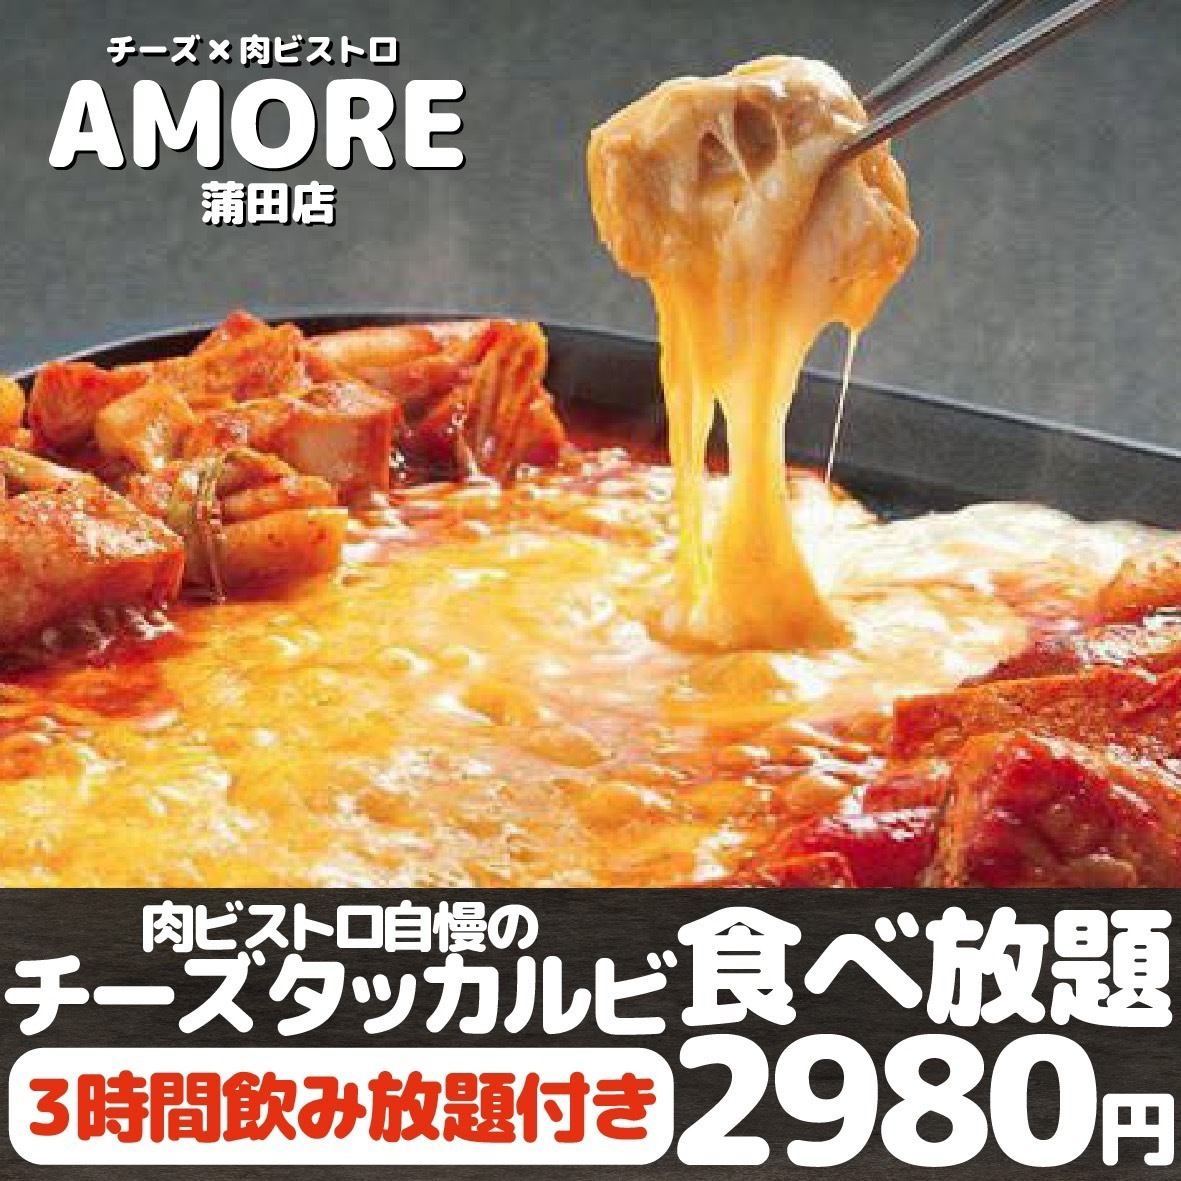 【吃到飽】3小時吃到喝起司炸雞排套餐♪ 2,480日元